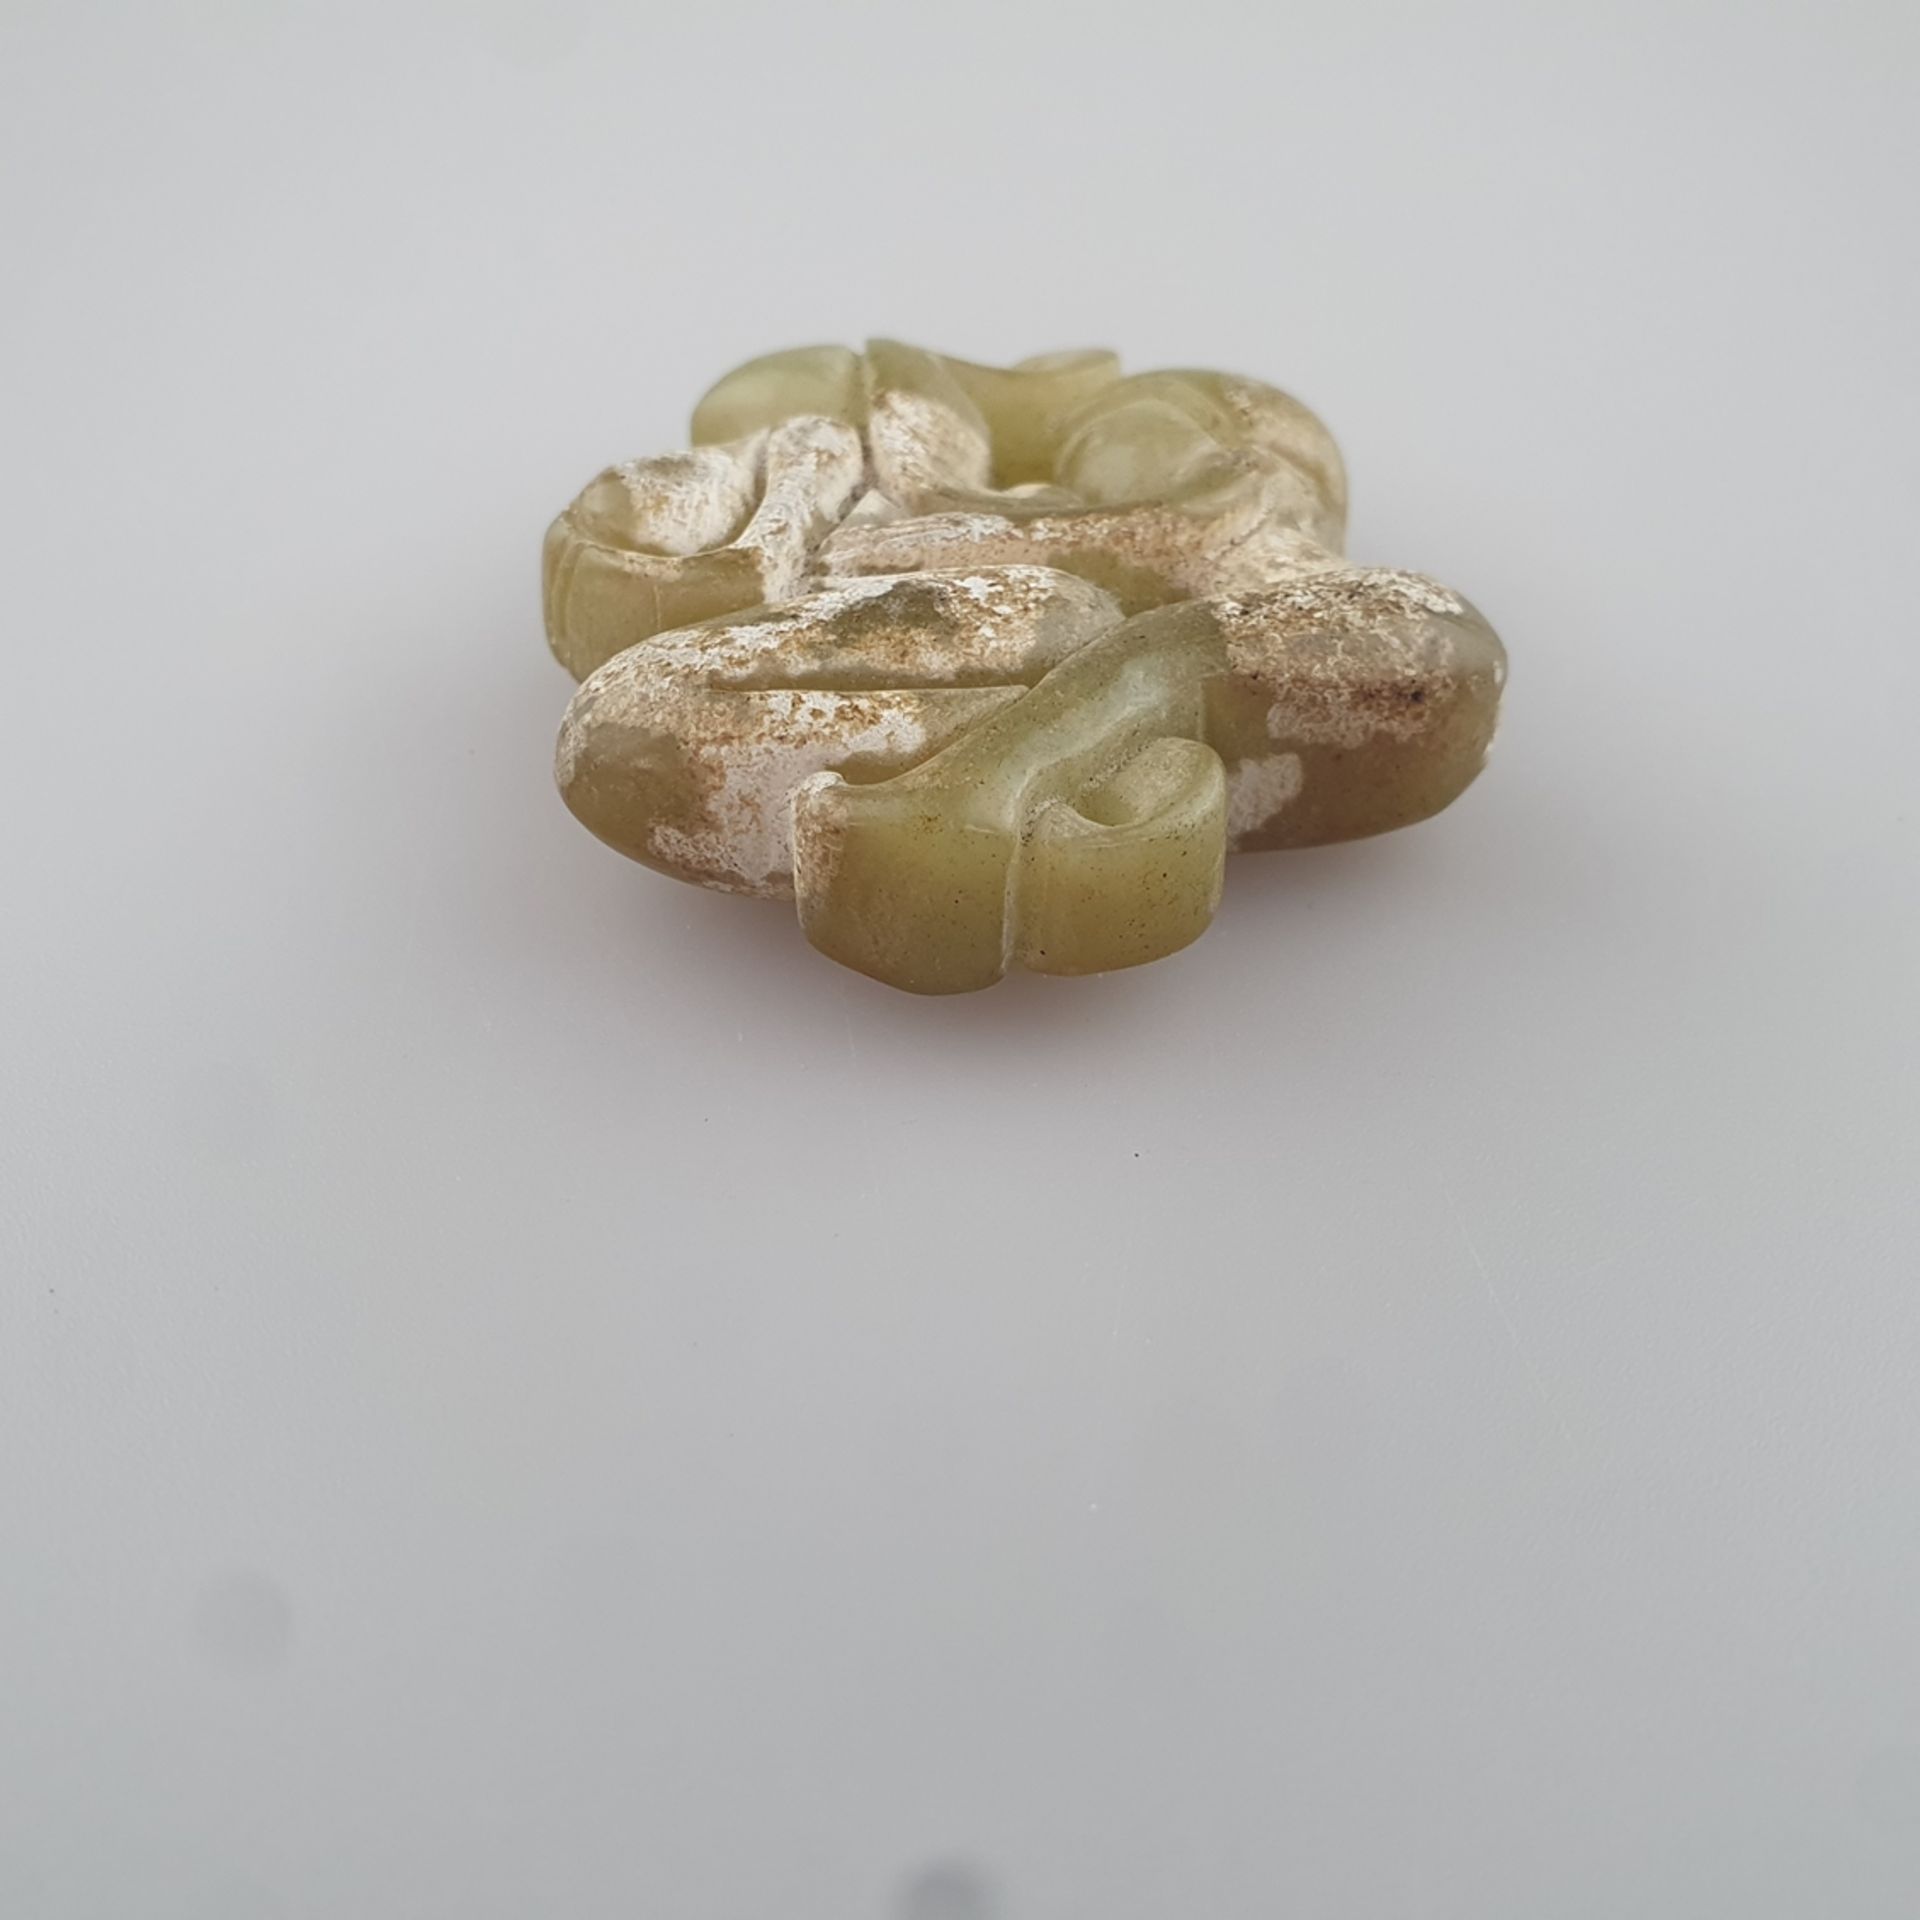 Jade mit erotischer Paarszene- China, gelblich grüne Jade, teils kalzifiziert, stilisierte Darstell - Bild 4 aus 6